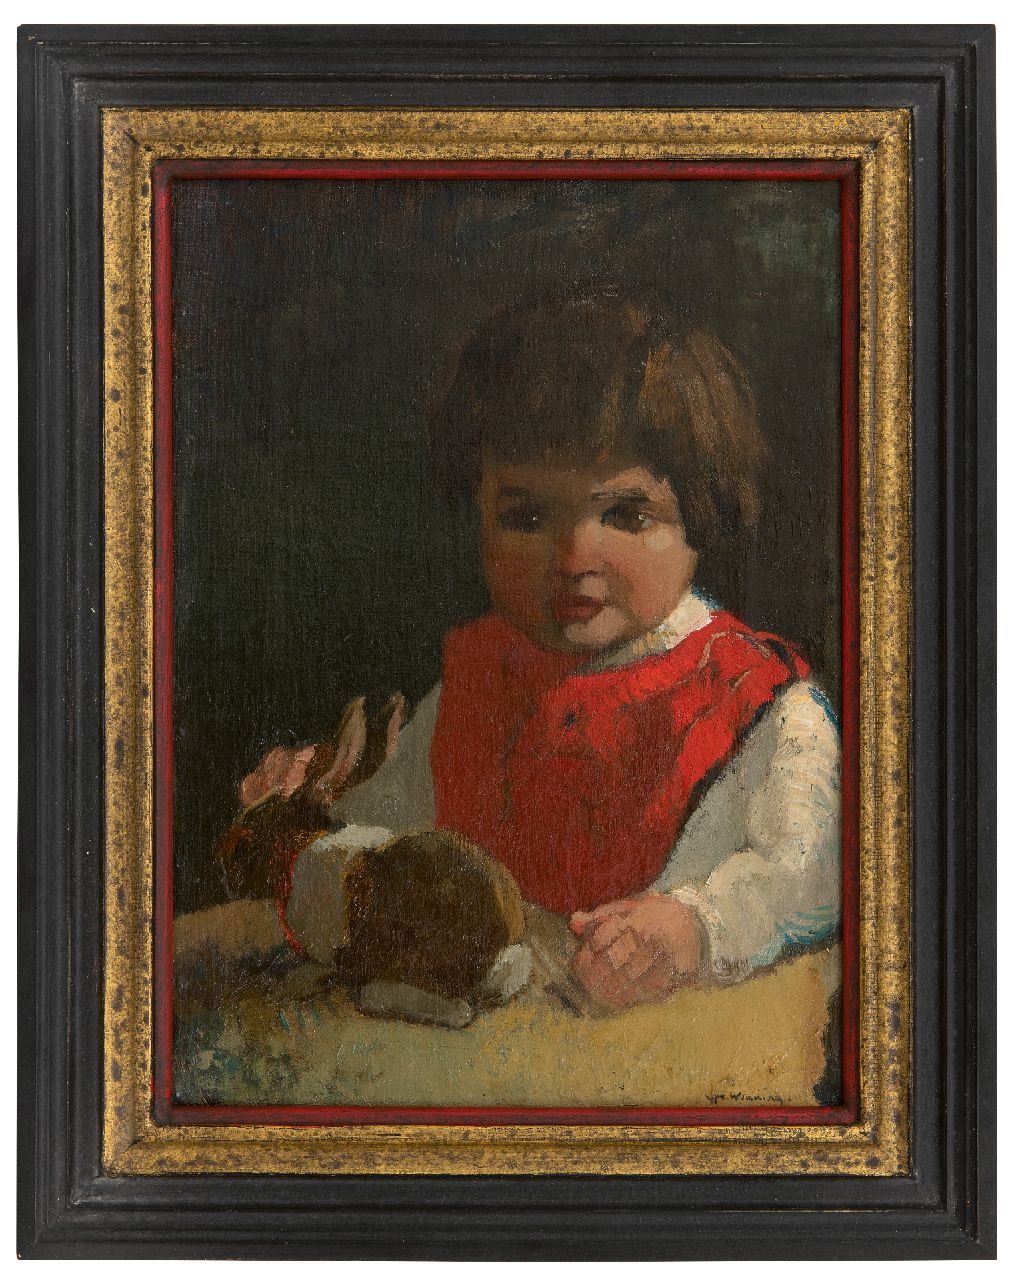 Wenning IJ.H.  | IJpe Heerke 'Ype' Wenning | Schilderijen te koop aangeboden | Meisje met haar knuffelkonijn, olieverf op doek 36,4 x 26,2 cm, gesigneerd rechtsonder